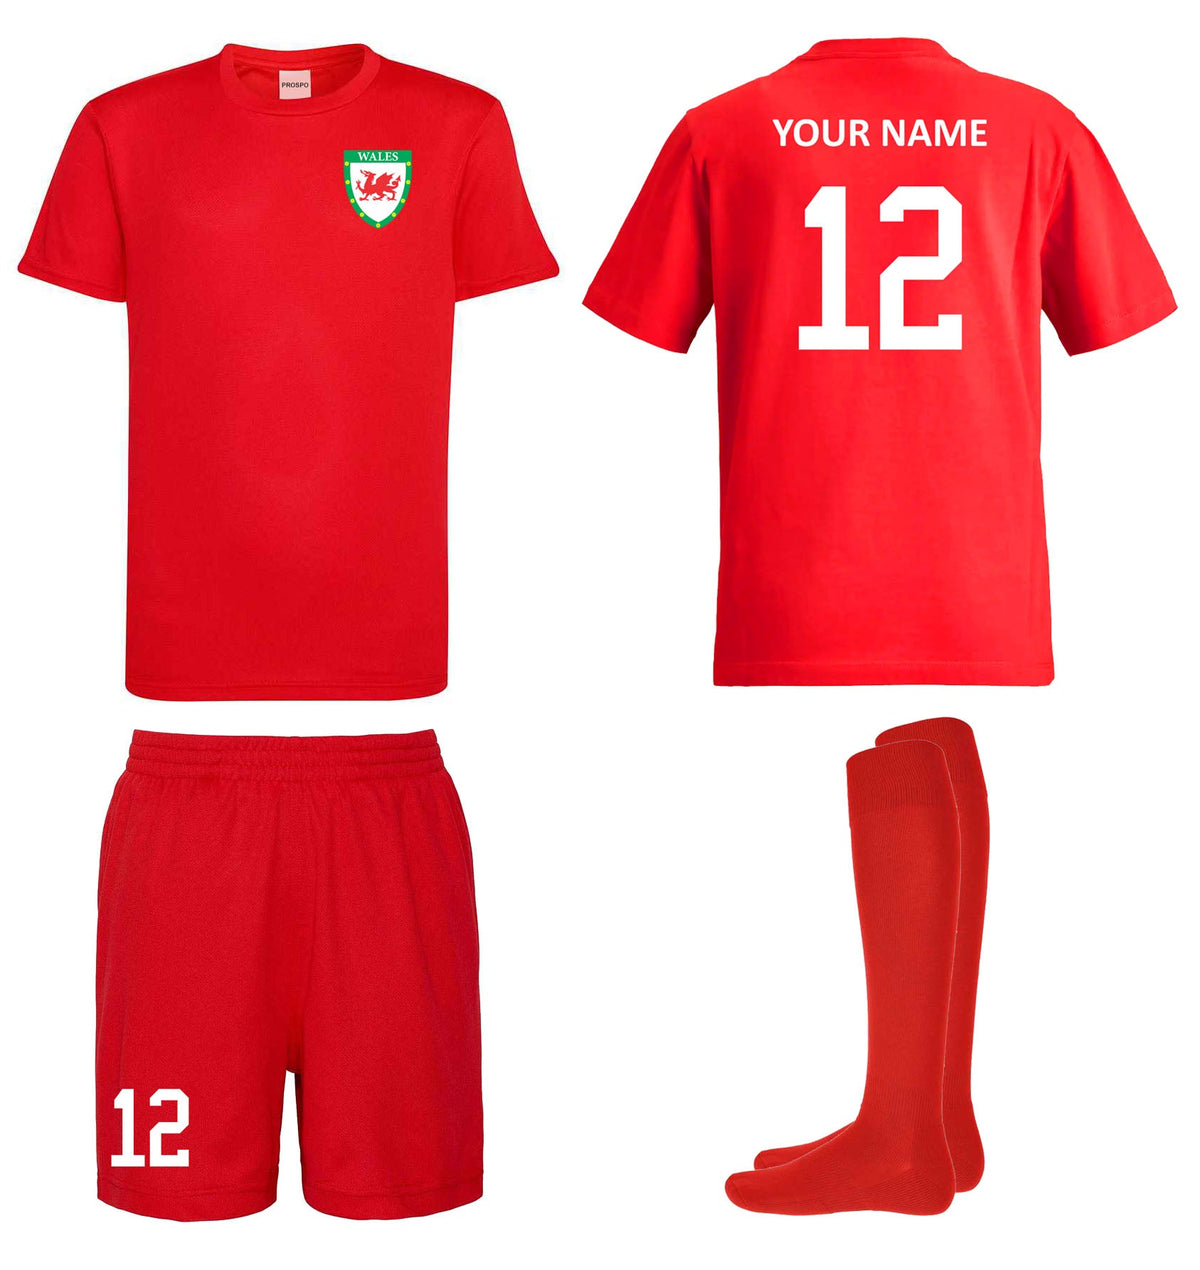 Personalised Wales Style Football Kits Red Custom Shirts Shorts and Socks